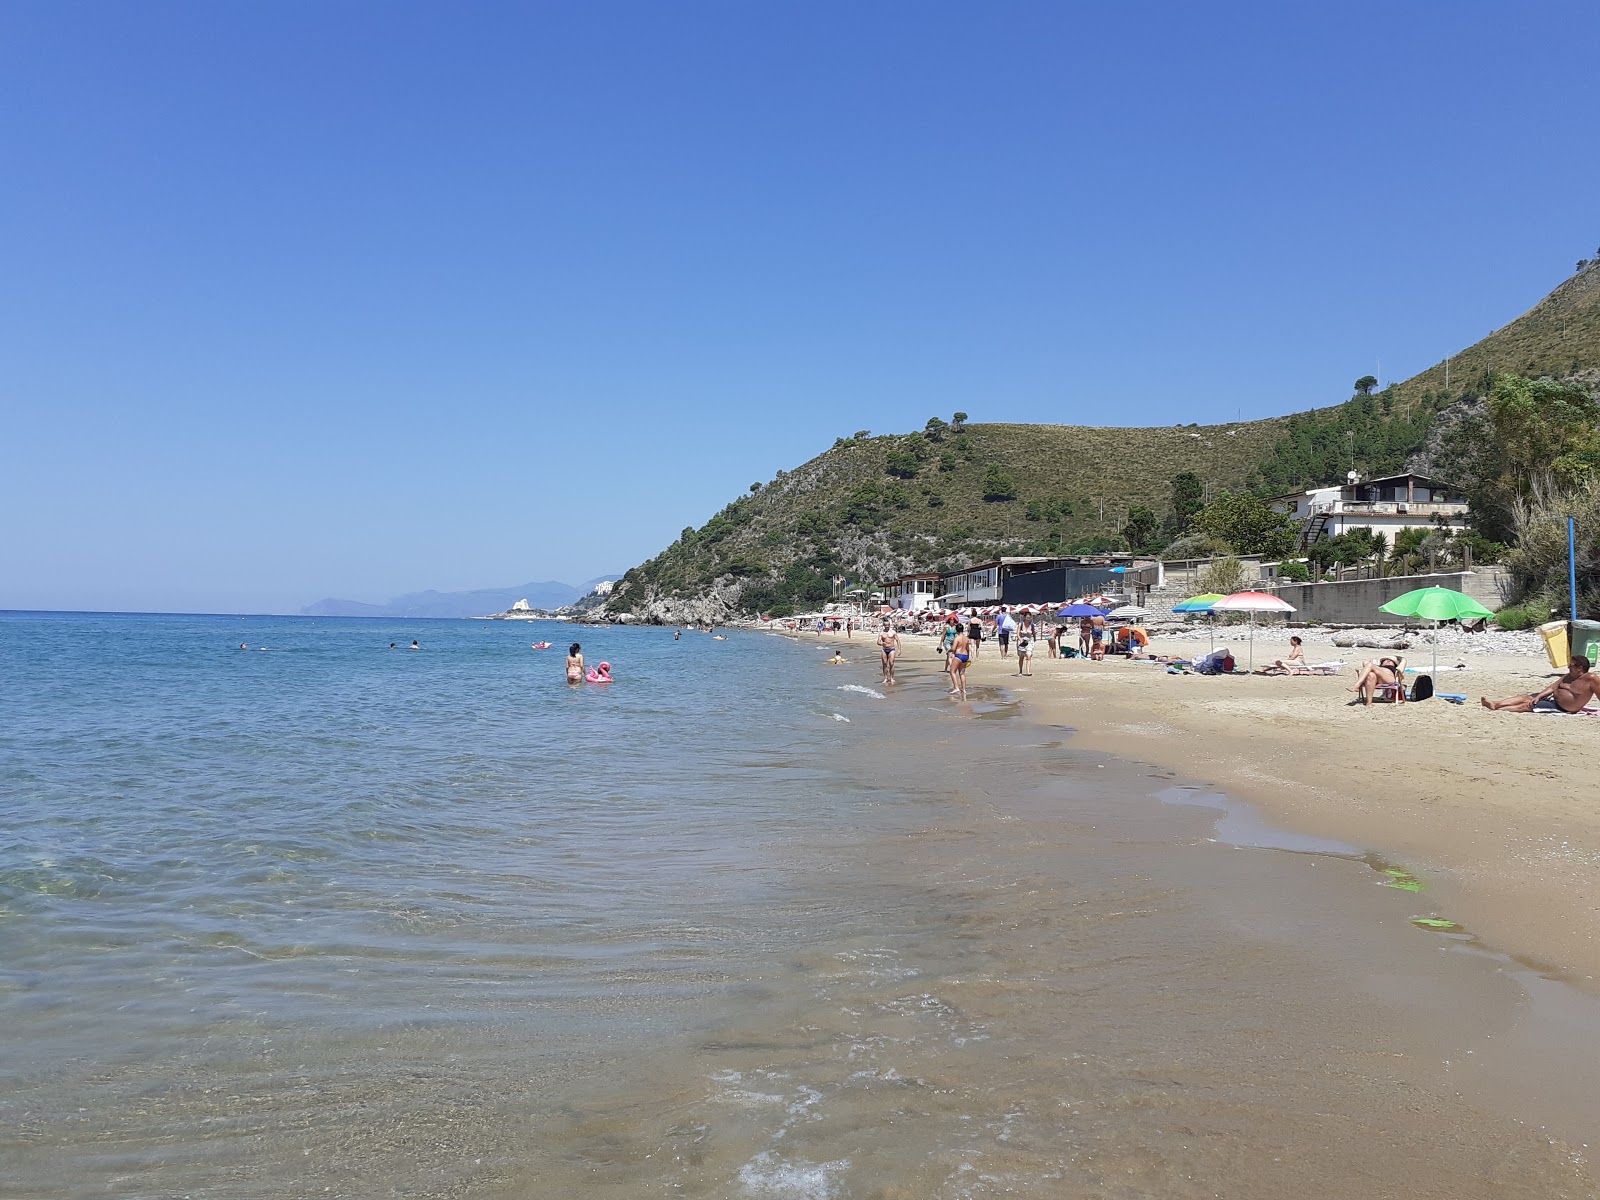 Fotografie cu Spiaggia libera Sperlonga cu o suprafață de apa albastra